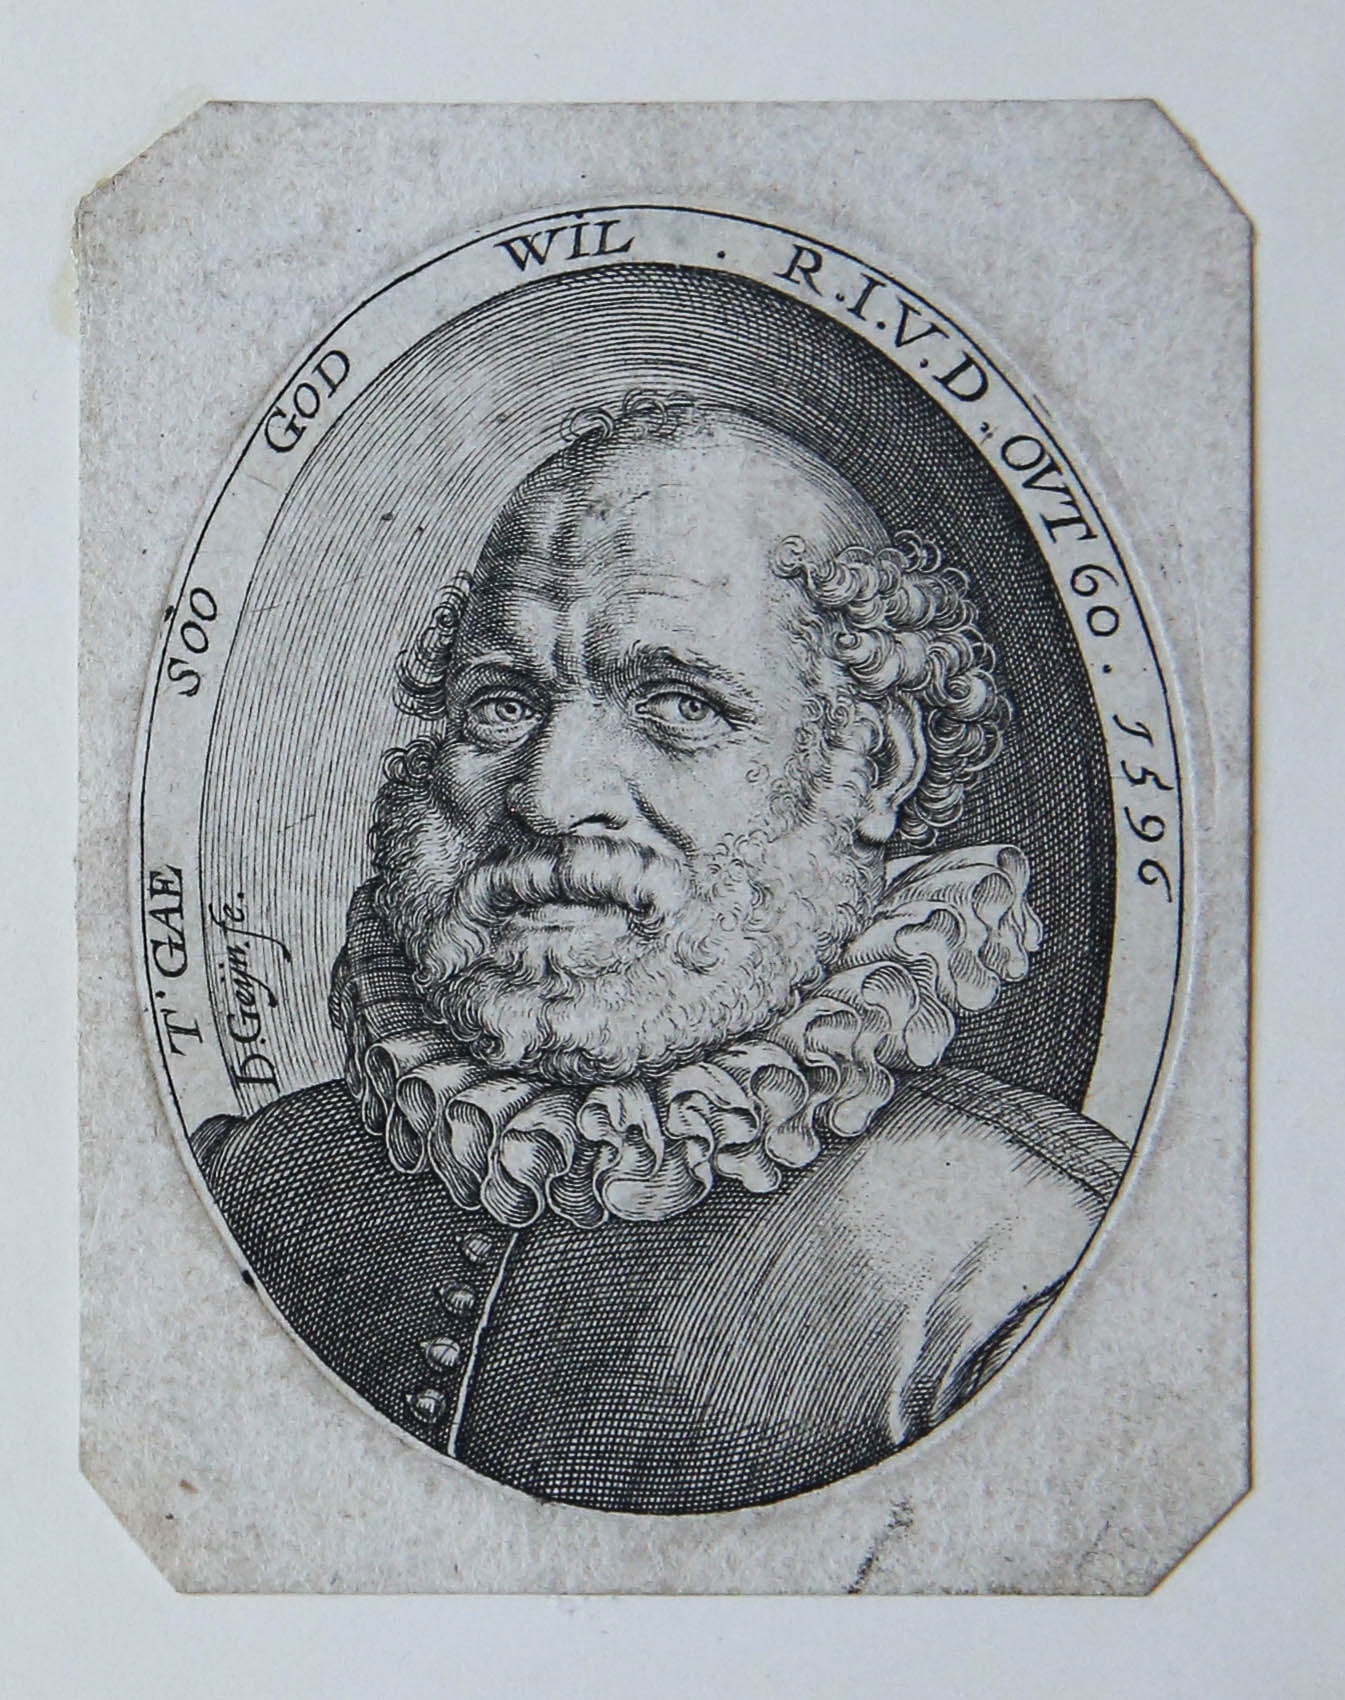 [Antique print, engraving] Portrait of Rutgaert Jansz/Portret van de dichter Rutgaert Jansz., published 1596.